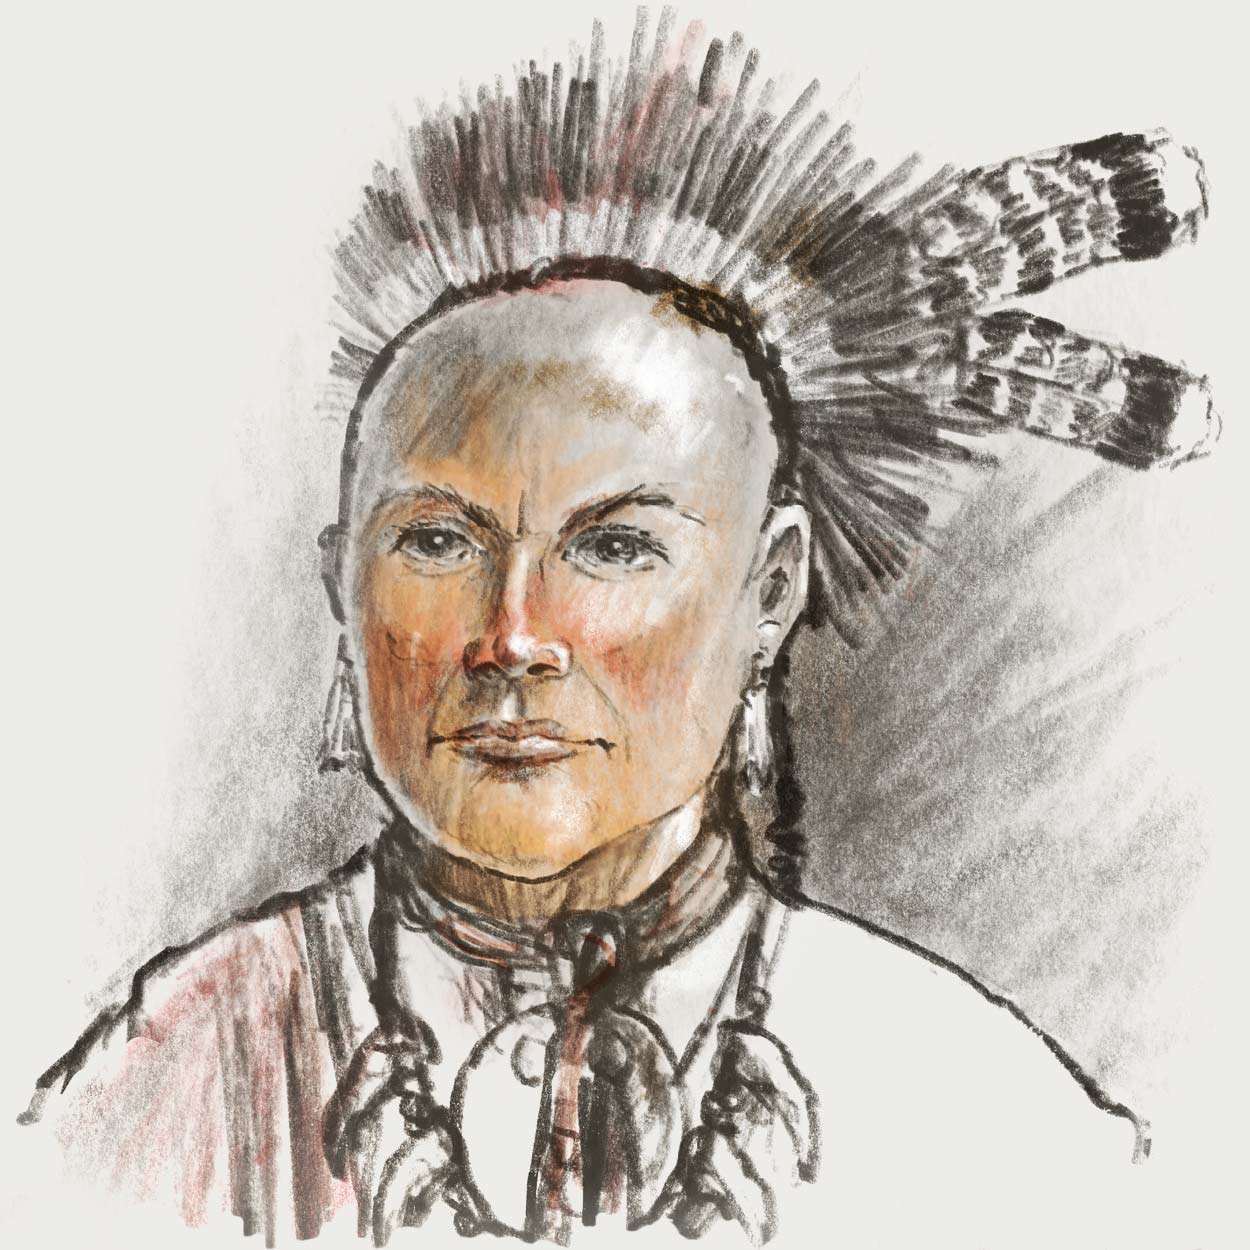 Drawn portrait of Han Yerry Tewahangaraghkan